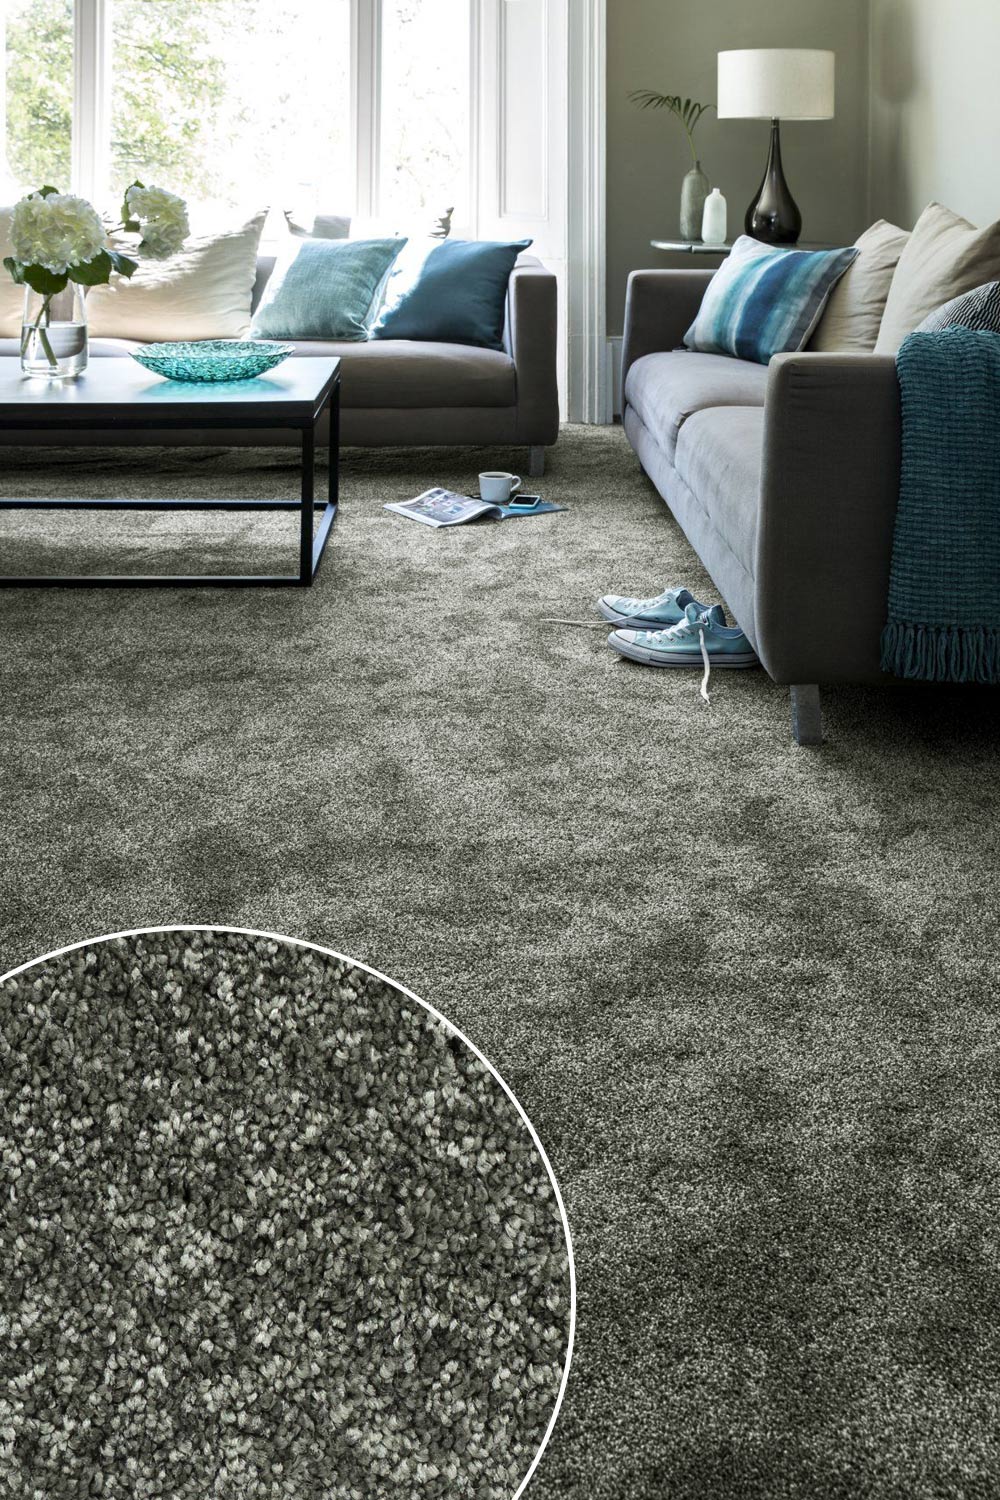 Metrážový koberec INDUS 27 500 cm